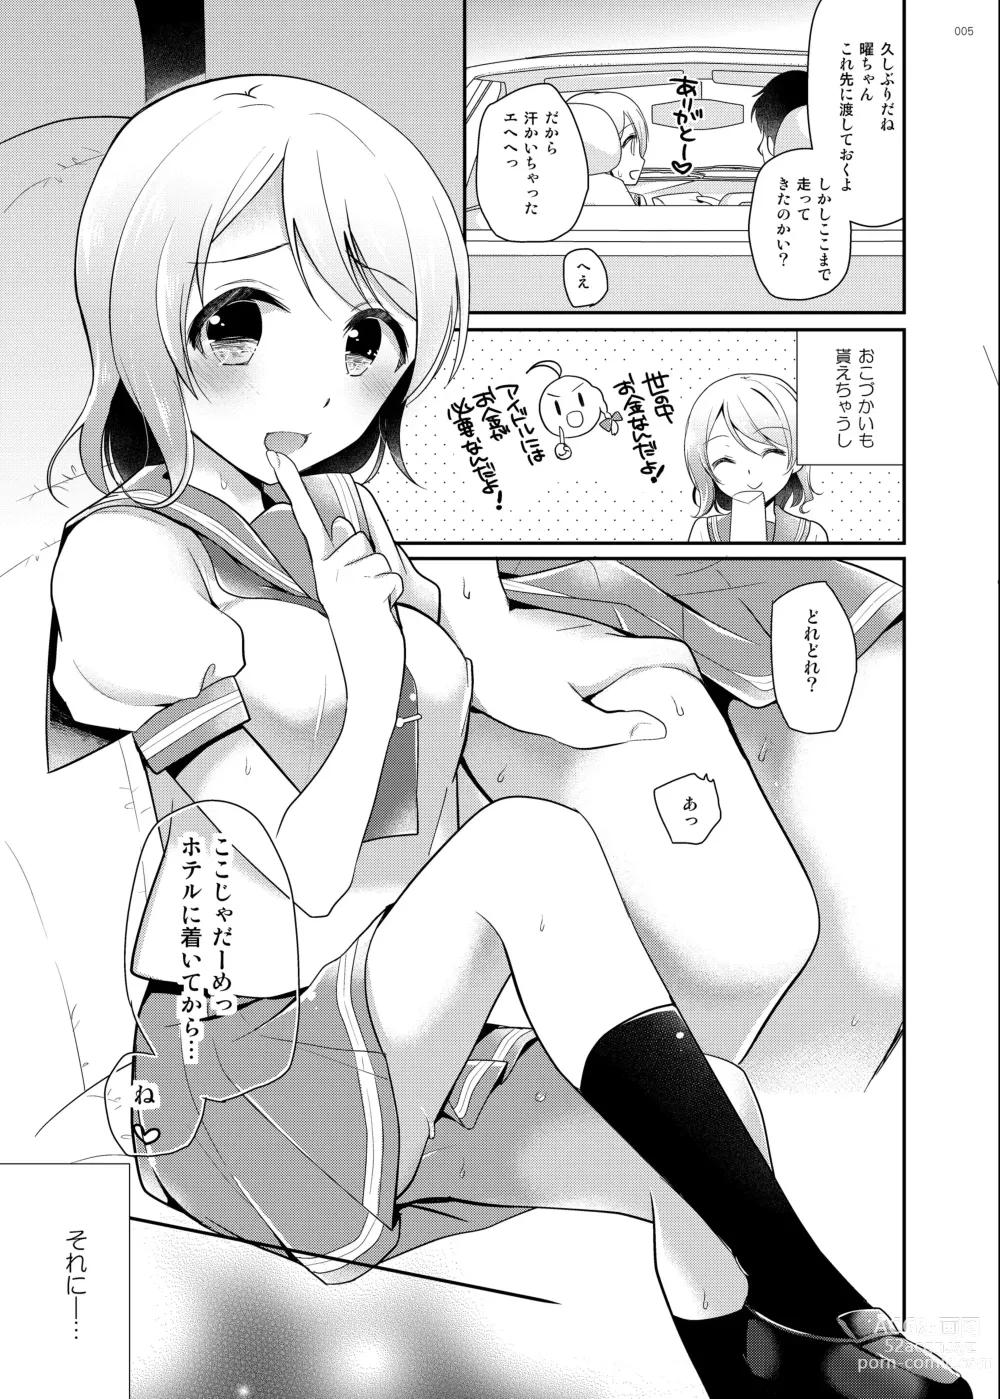 Page 4 of doujinshi You-chan no Himitsu